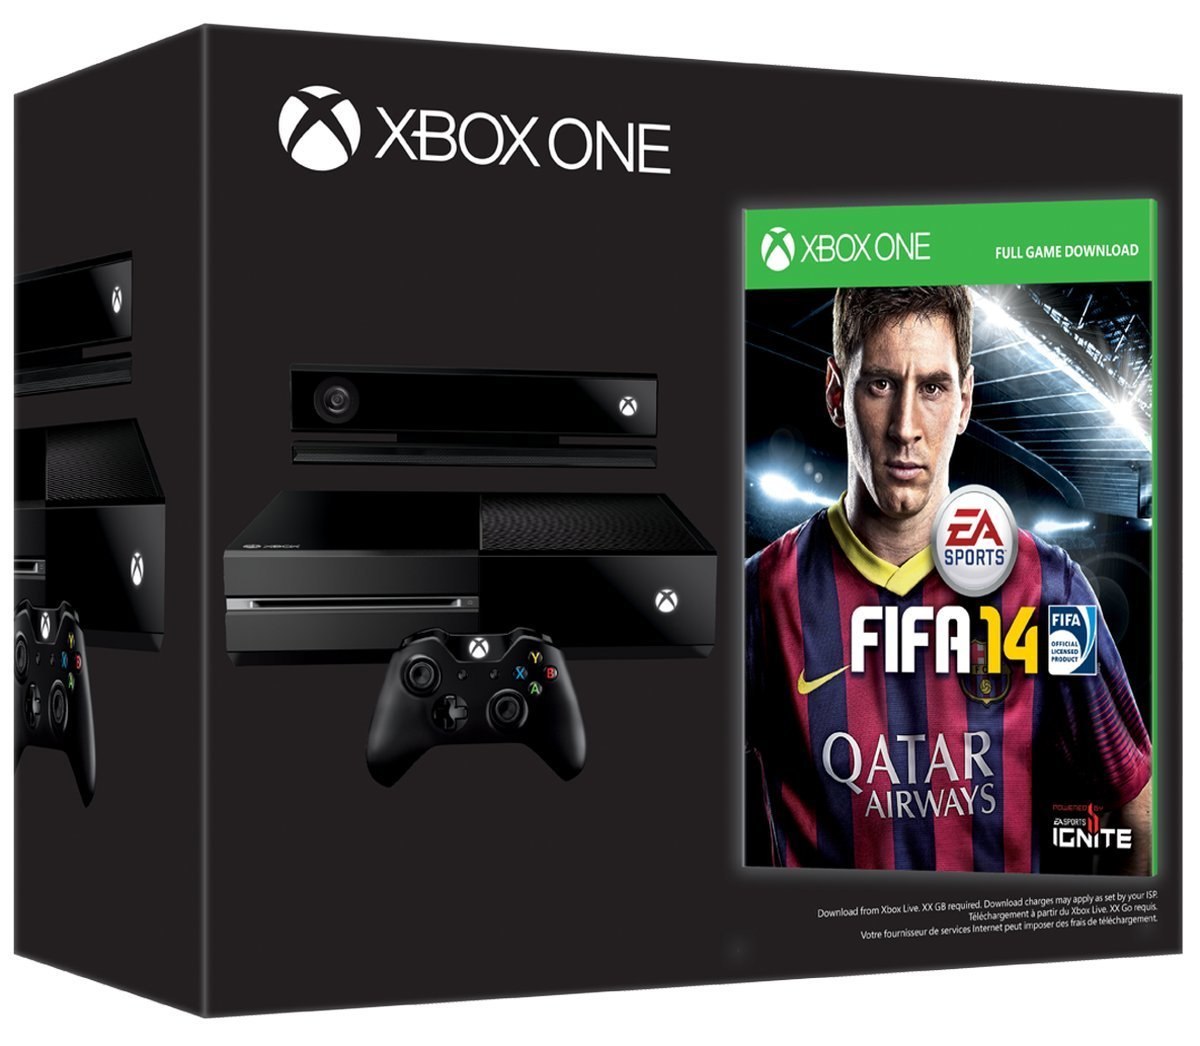 FIFA 14 gratis solo con Xbox One Day One Edition